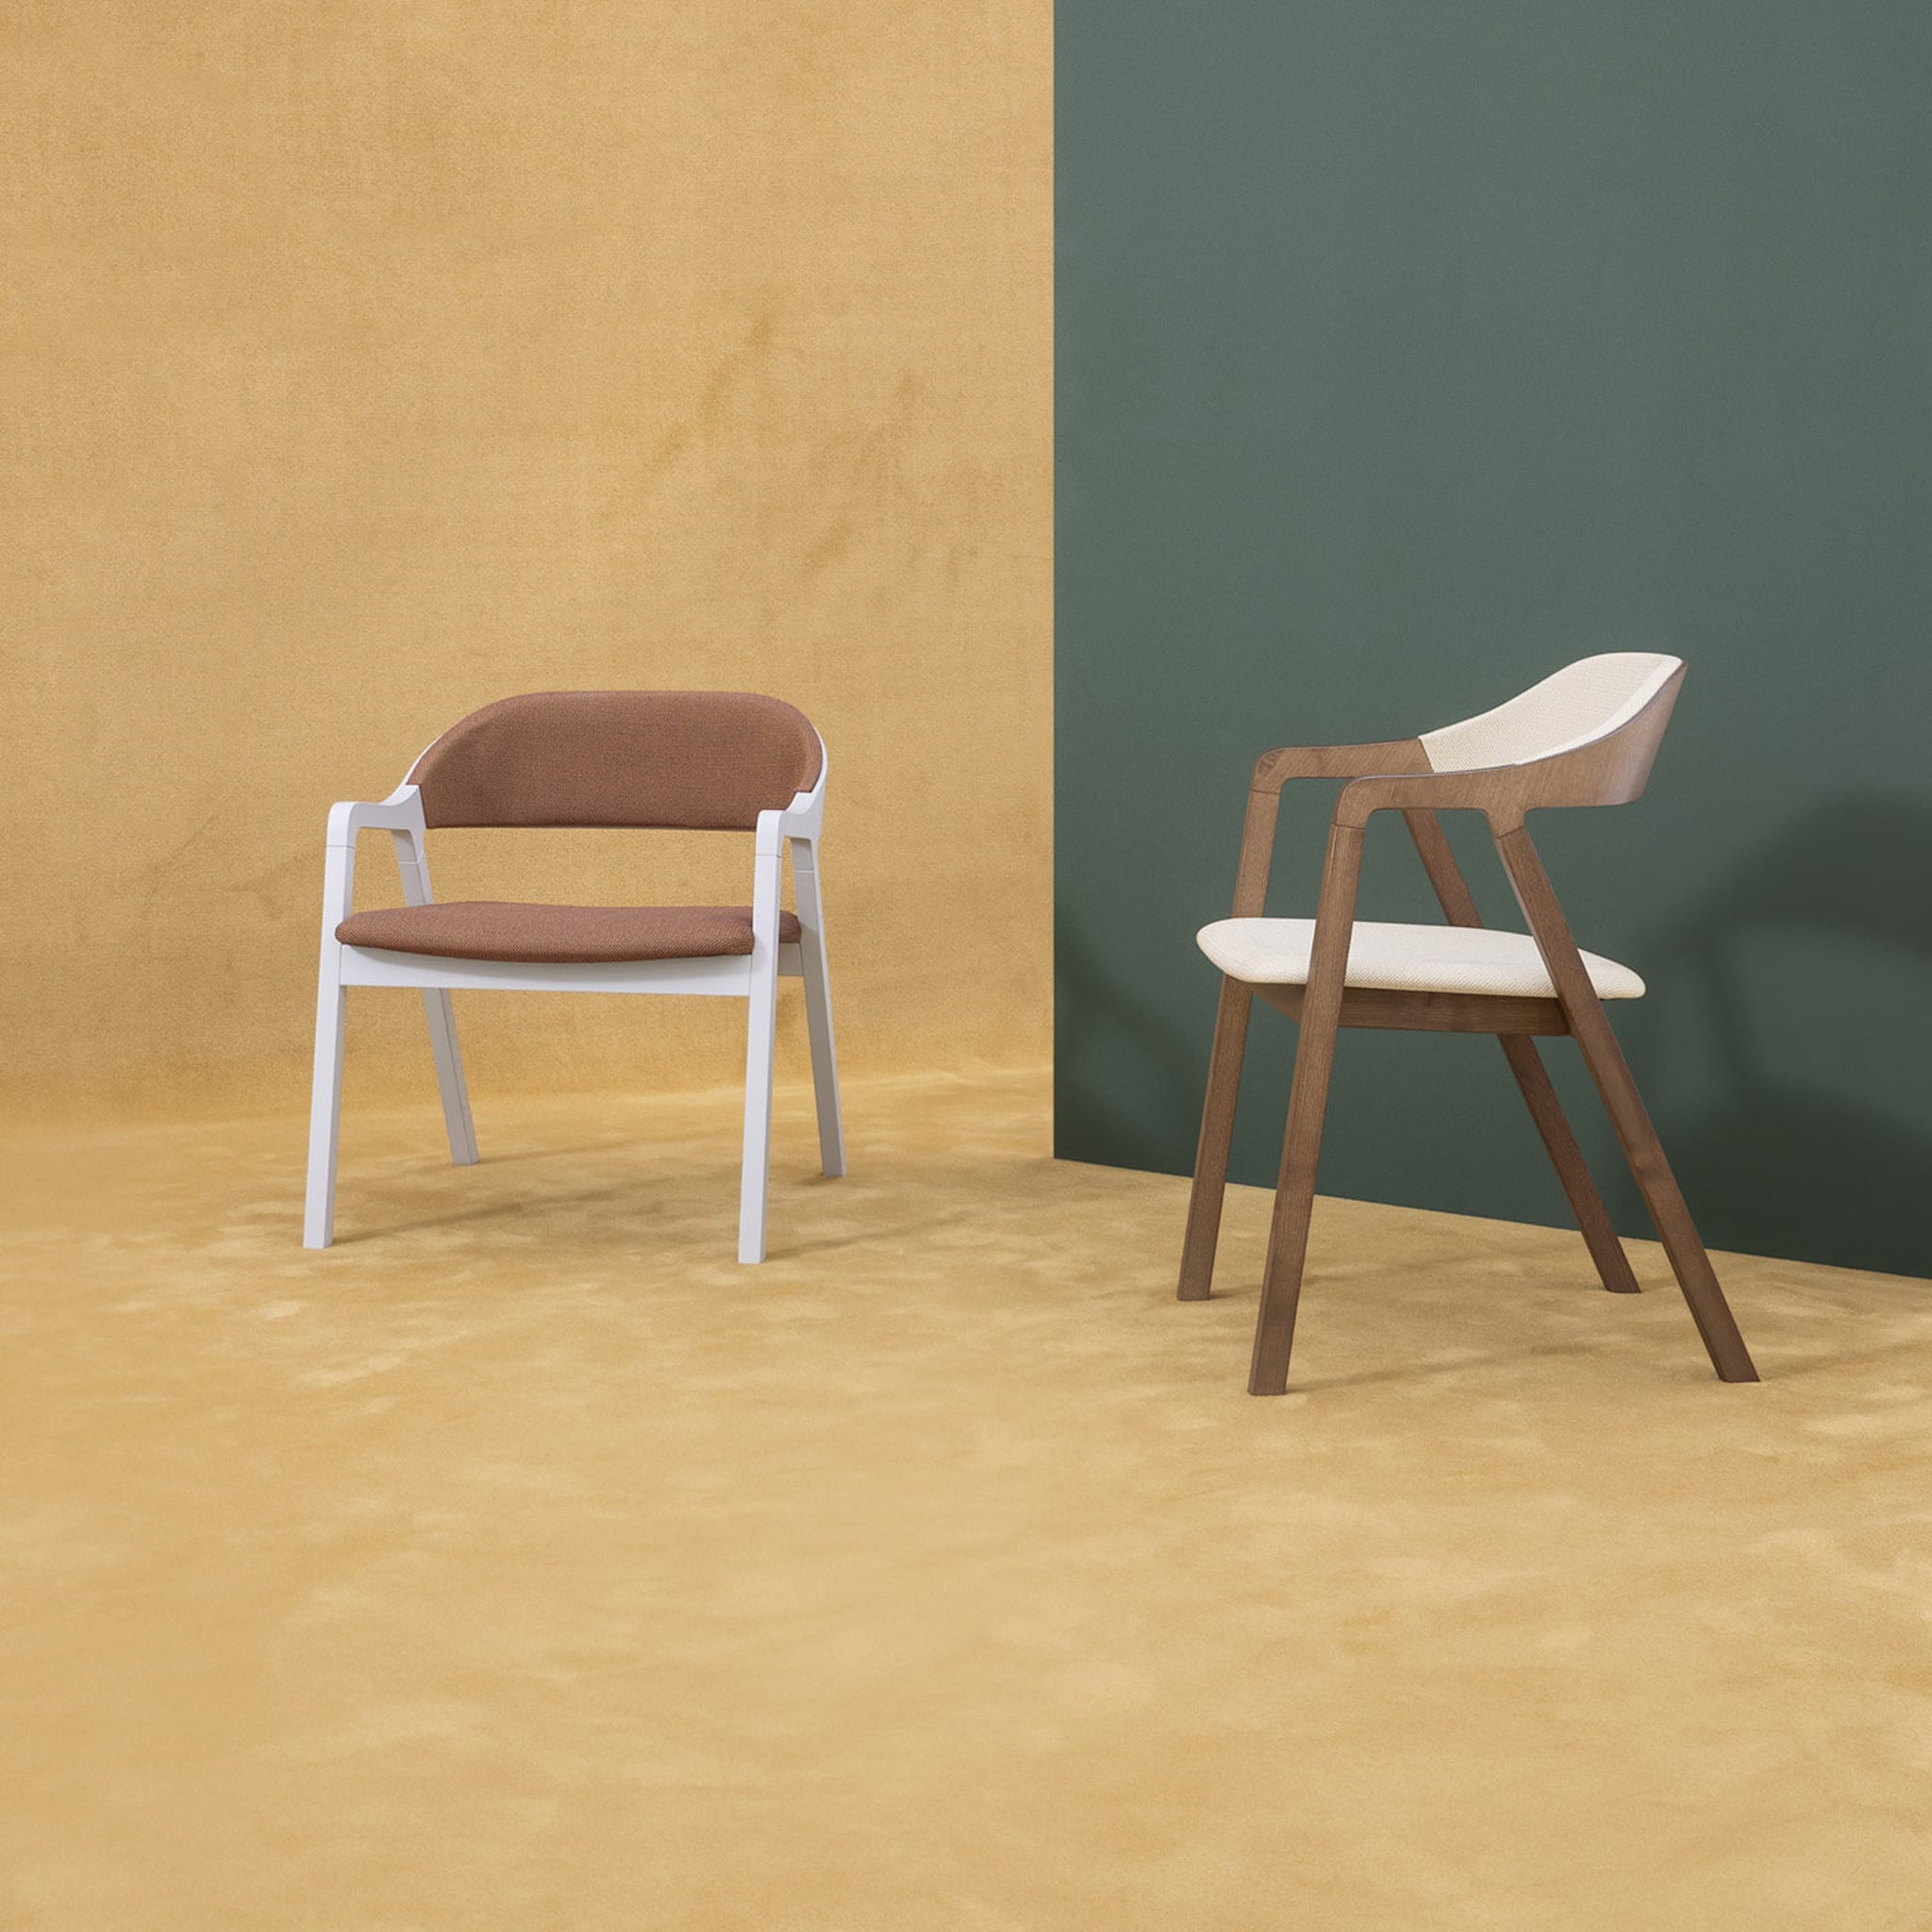 Layer Lounge Chair by Michael Geldmacher - Alternative view 4